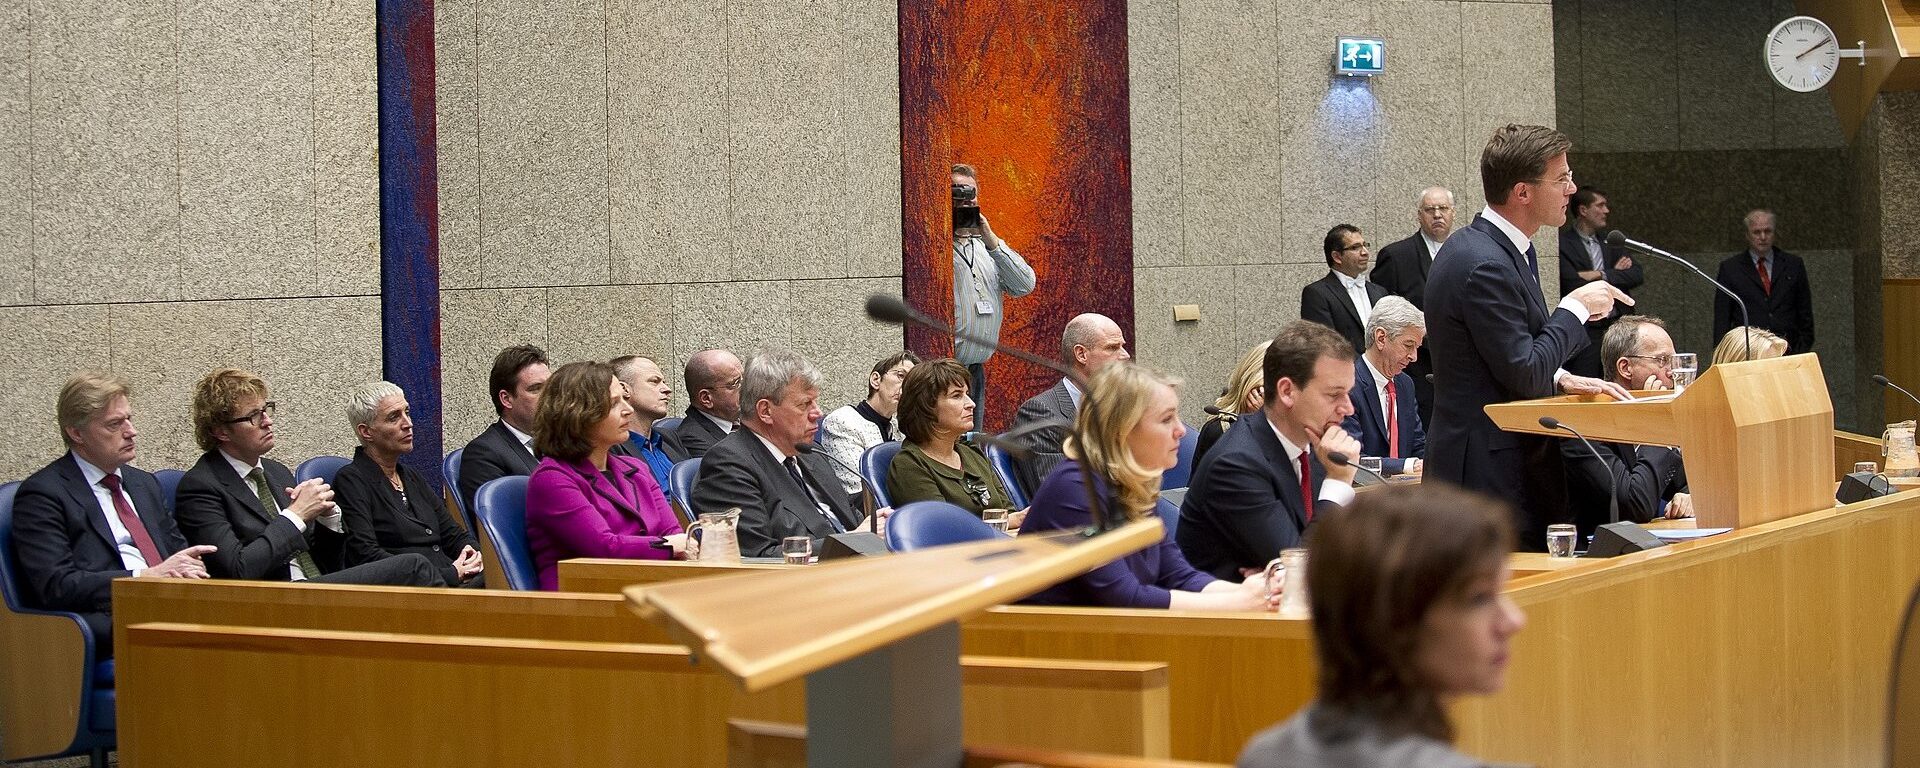 Premier Mark Rutte spreekt de Tweede Kamer toe tijdens het debat over de regeringsverklaring bij het aantreden van het kabinet-Rutte II, 2012. (Beeld: Flickr, Richard van Elferen)